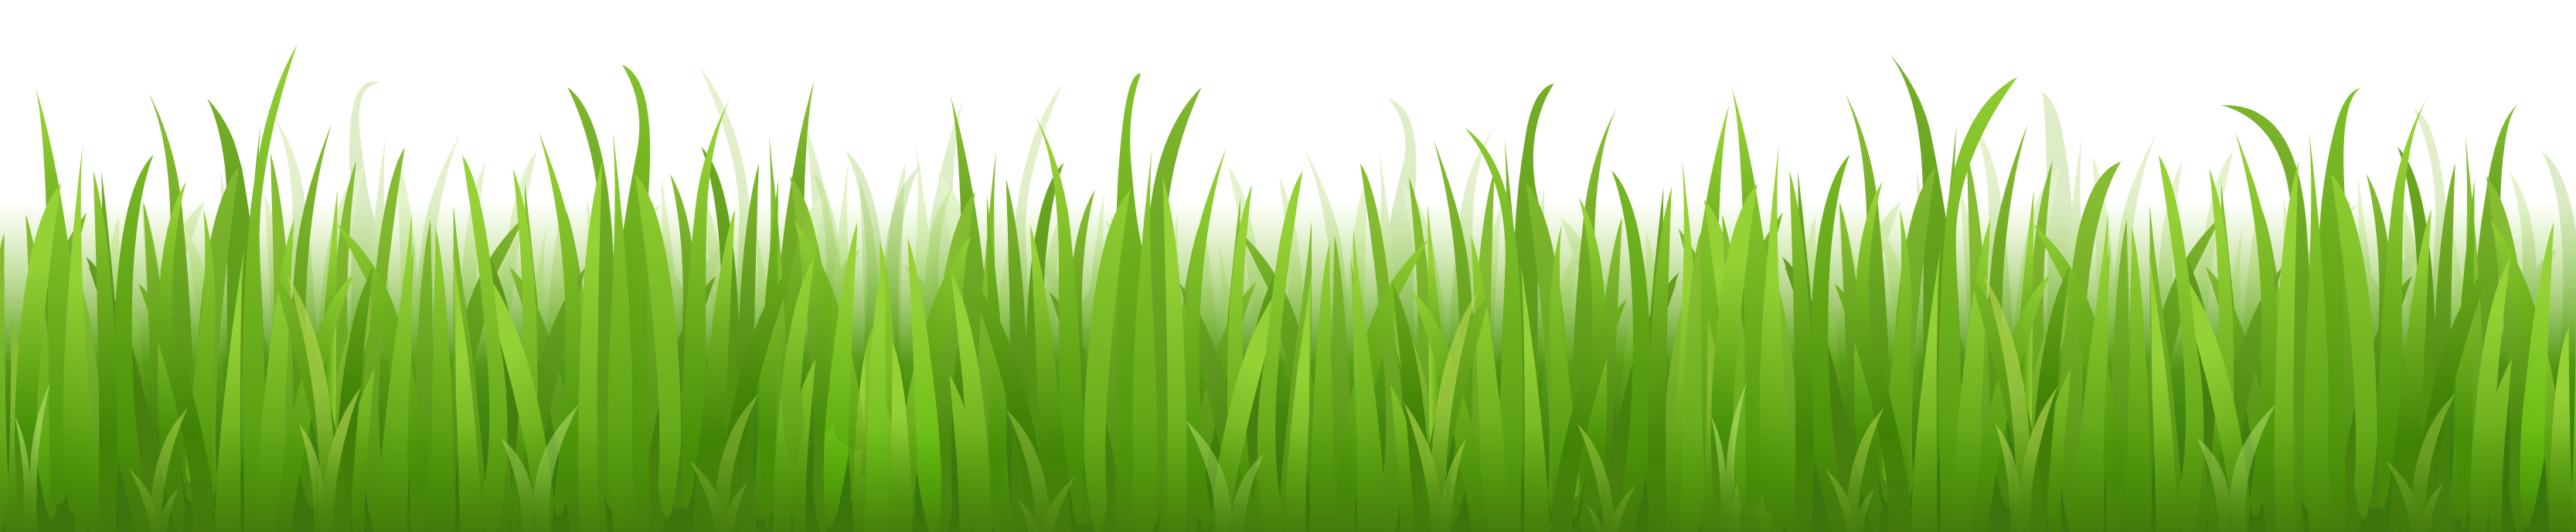 outdoors clipart grasss